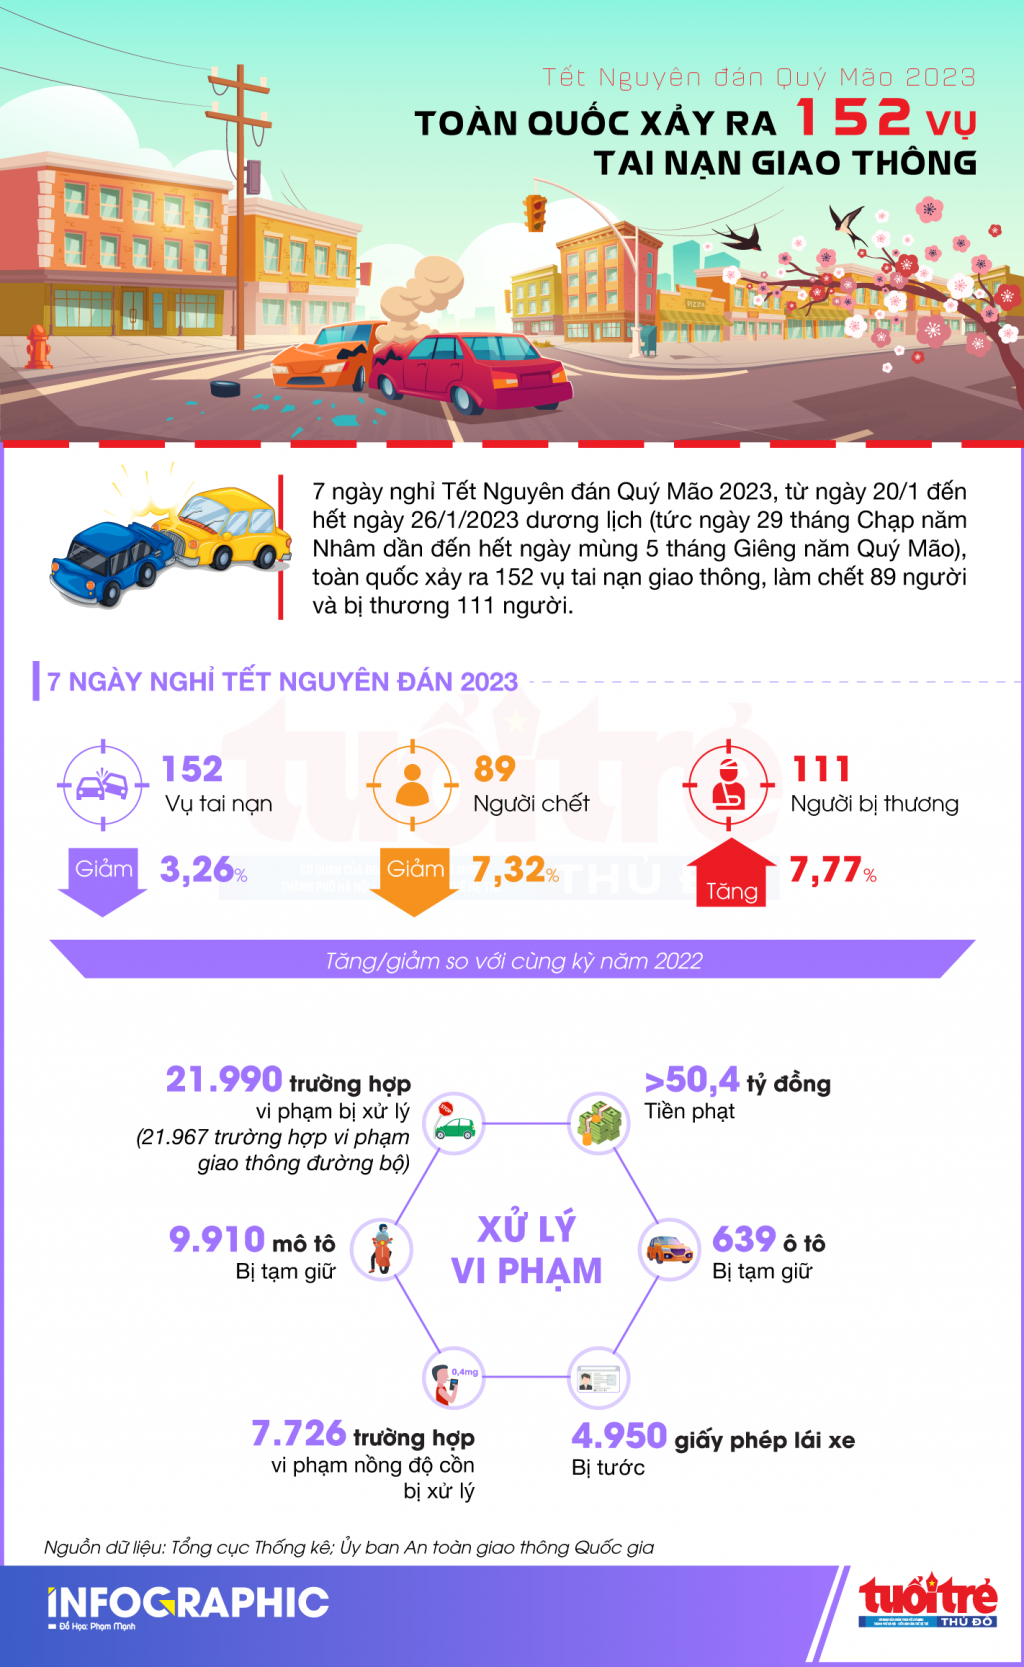 Toàn quốc xảy ra 152 vụ tai nạn giao thông trong dịp Tết Nguyên đán 2023